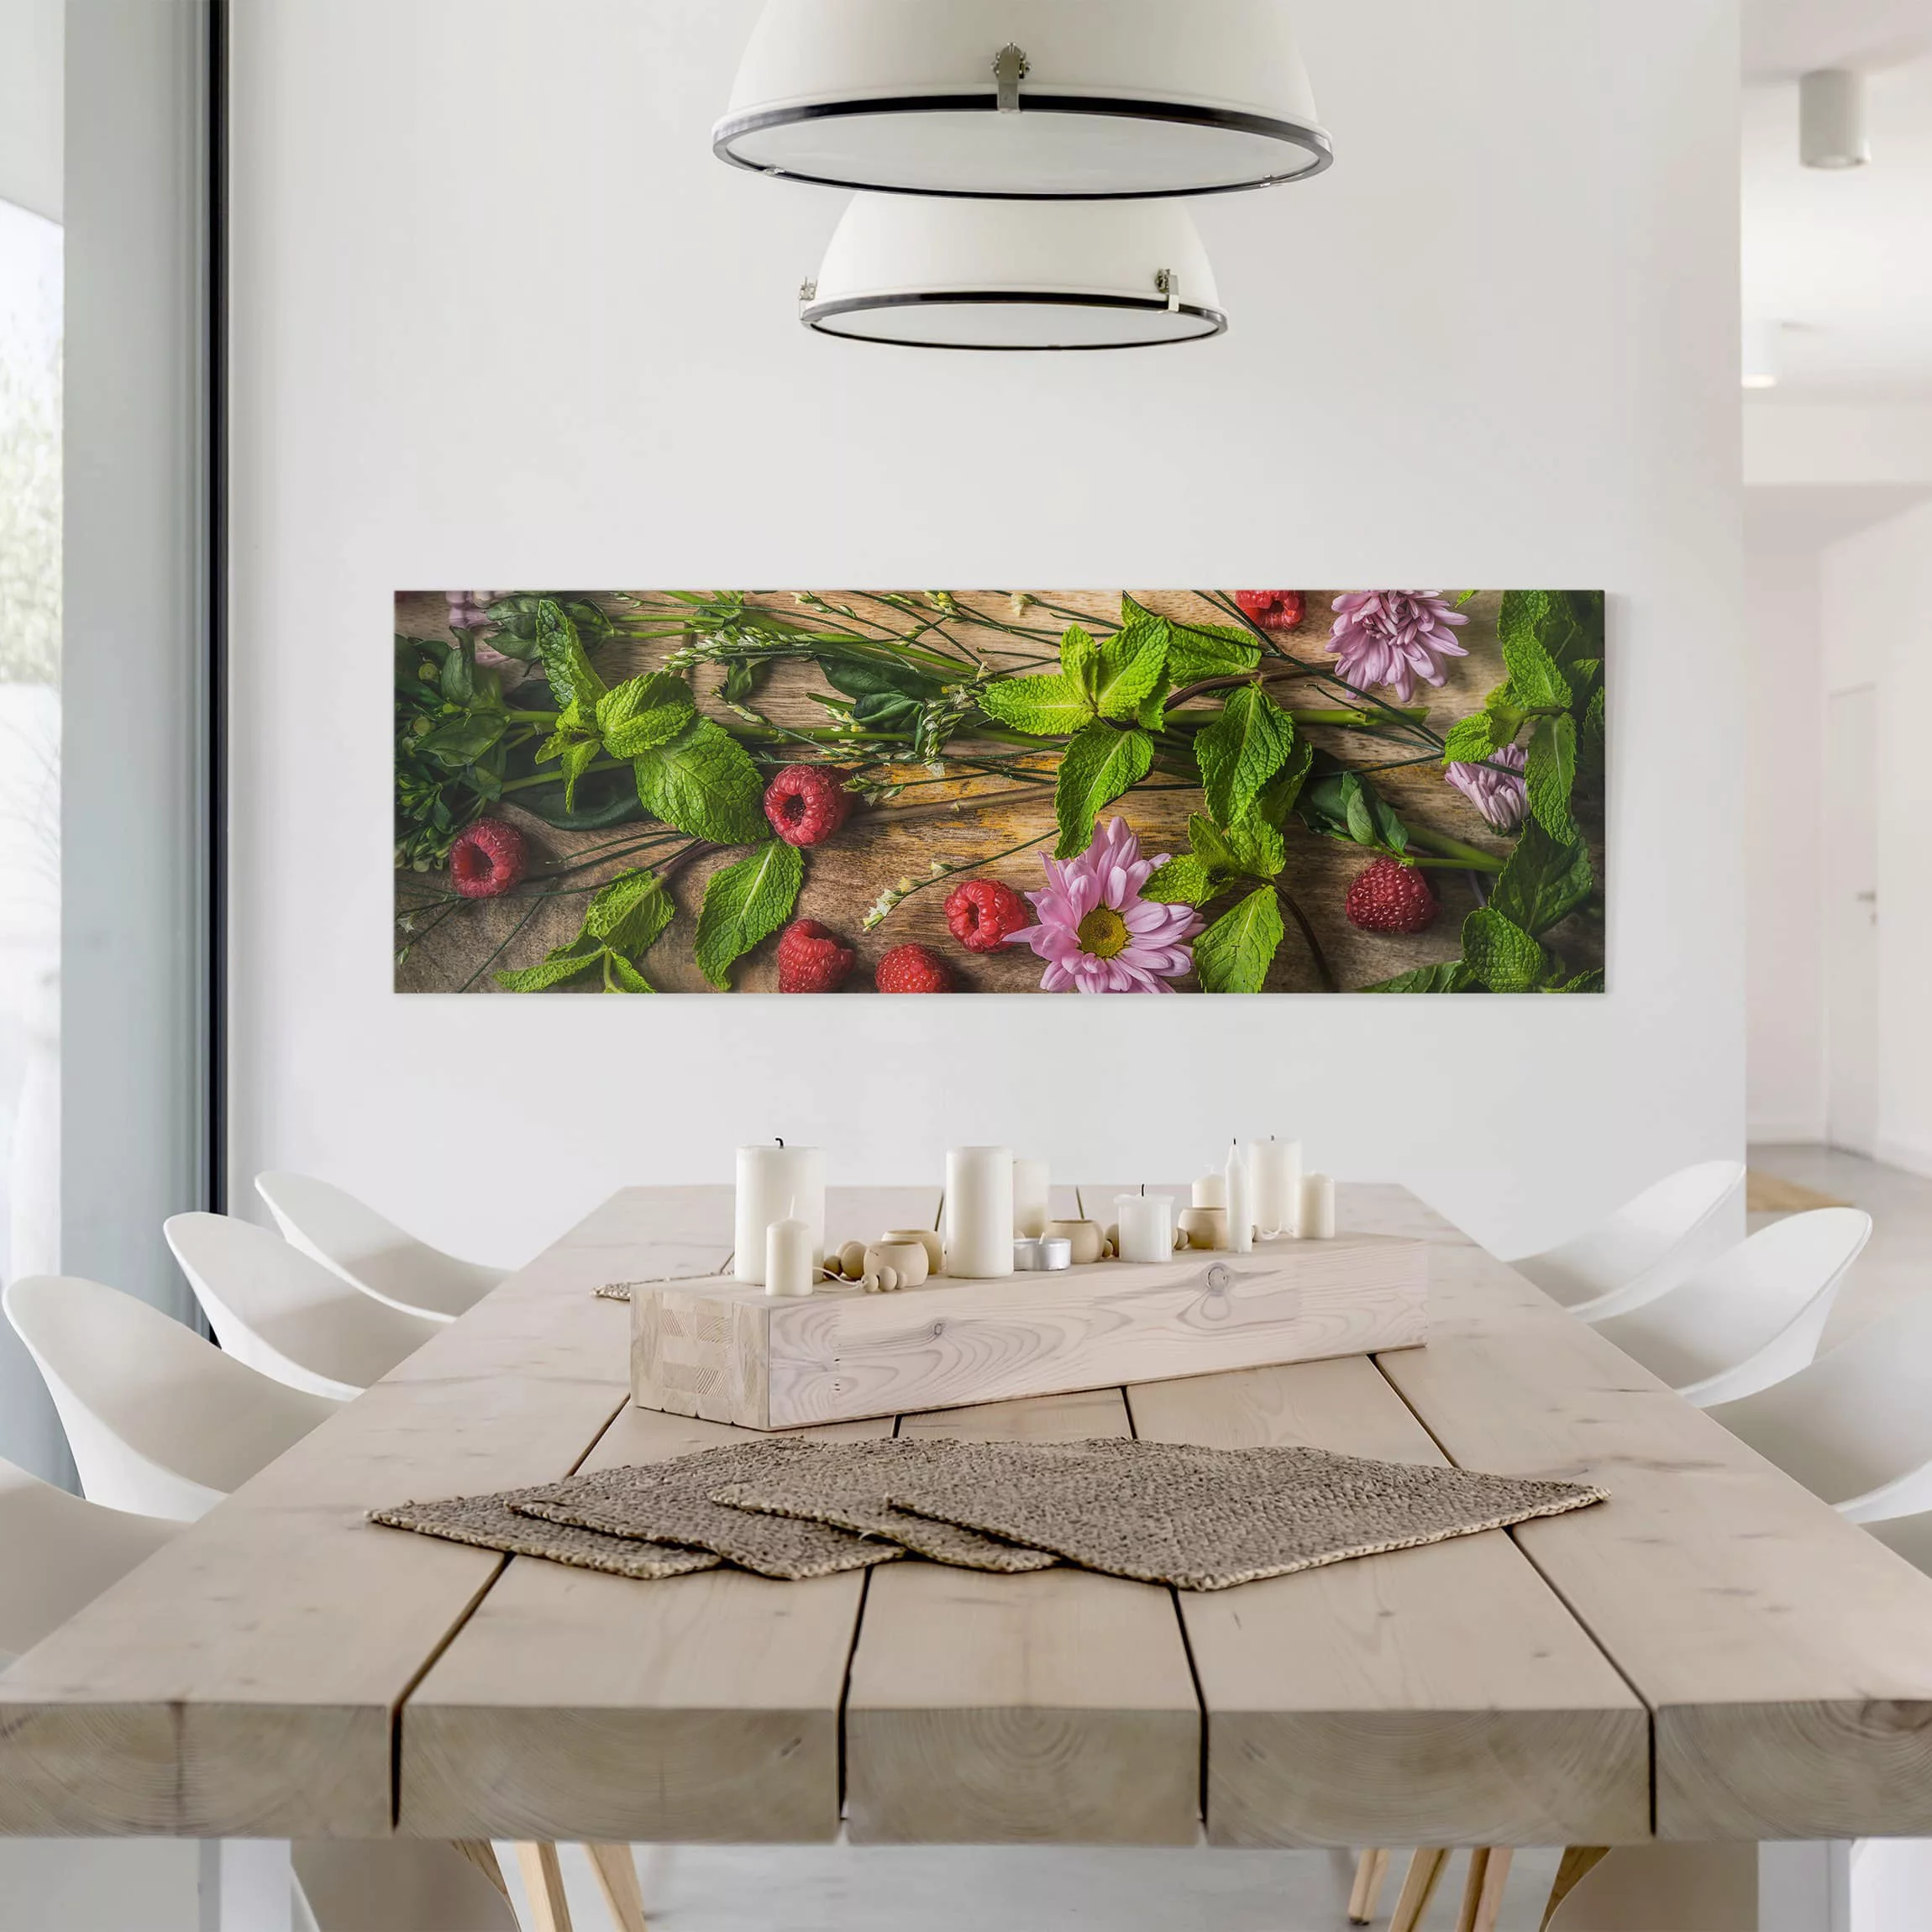 Leinwandbild Küche - Panorama Blumen Himbeeren Minze günstig online kaufen